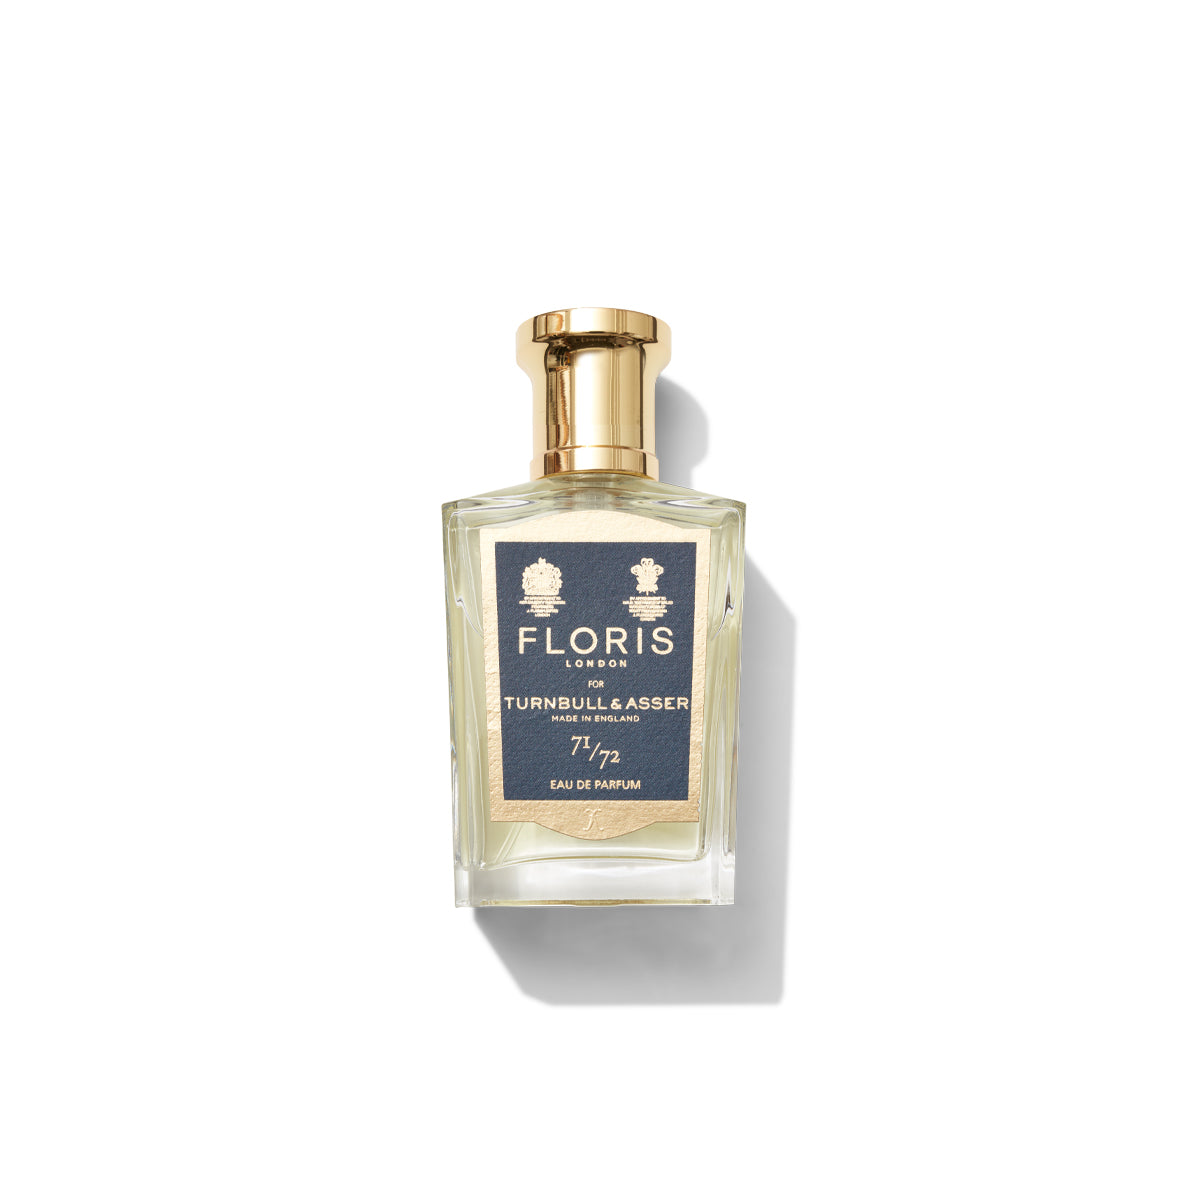 50ml bottle of Floris London 71/72 Eau de Parfum